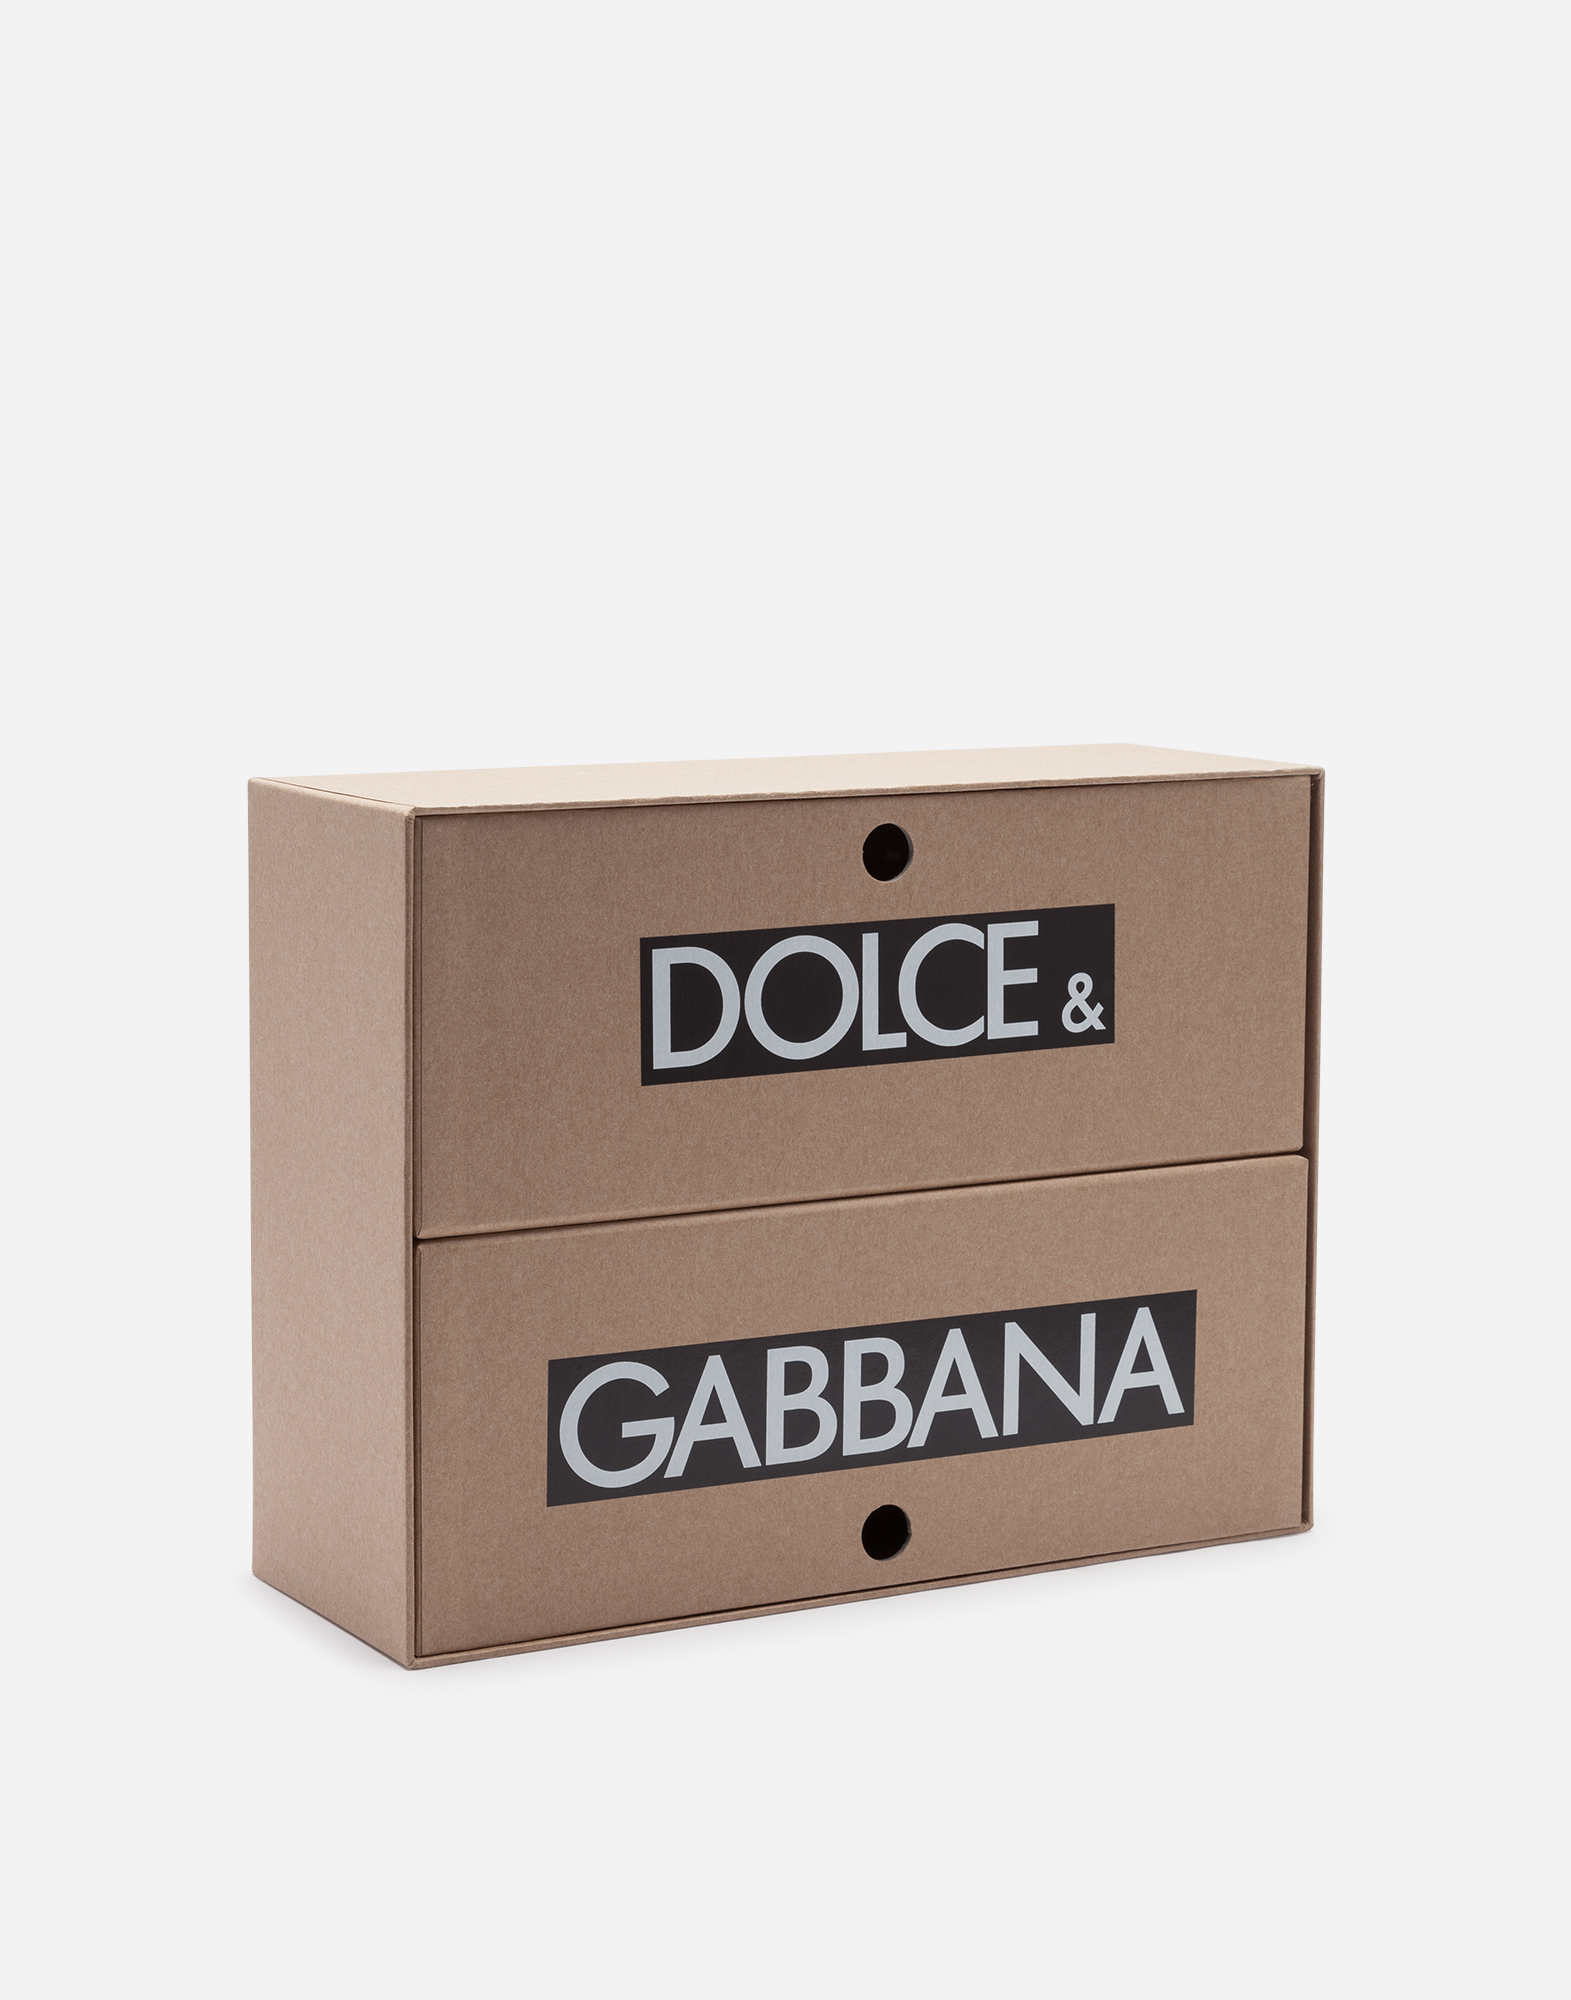 dolce and gabbana shoe box